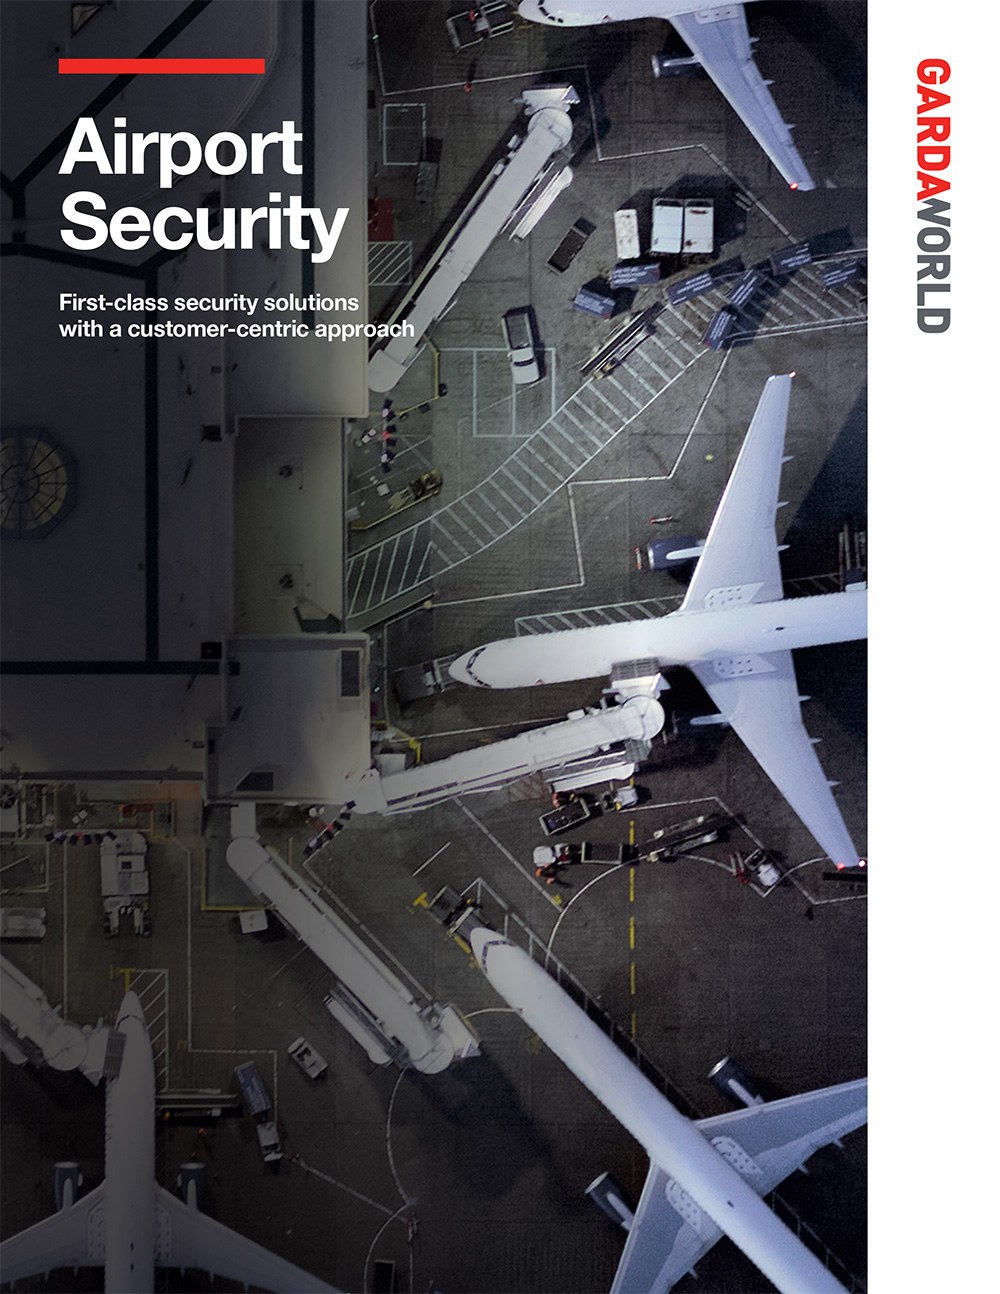 Capability Sheet - Aviation Security